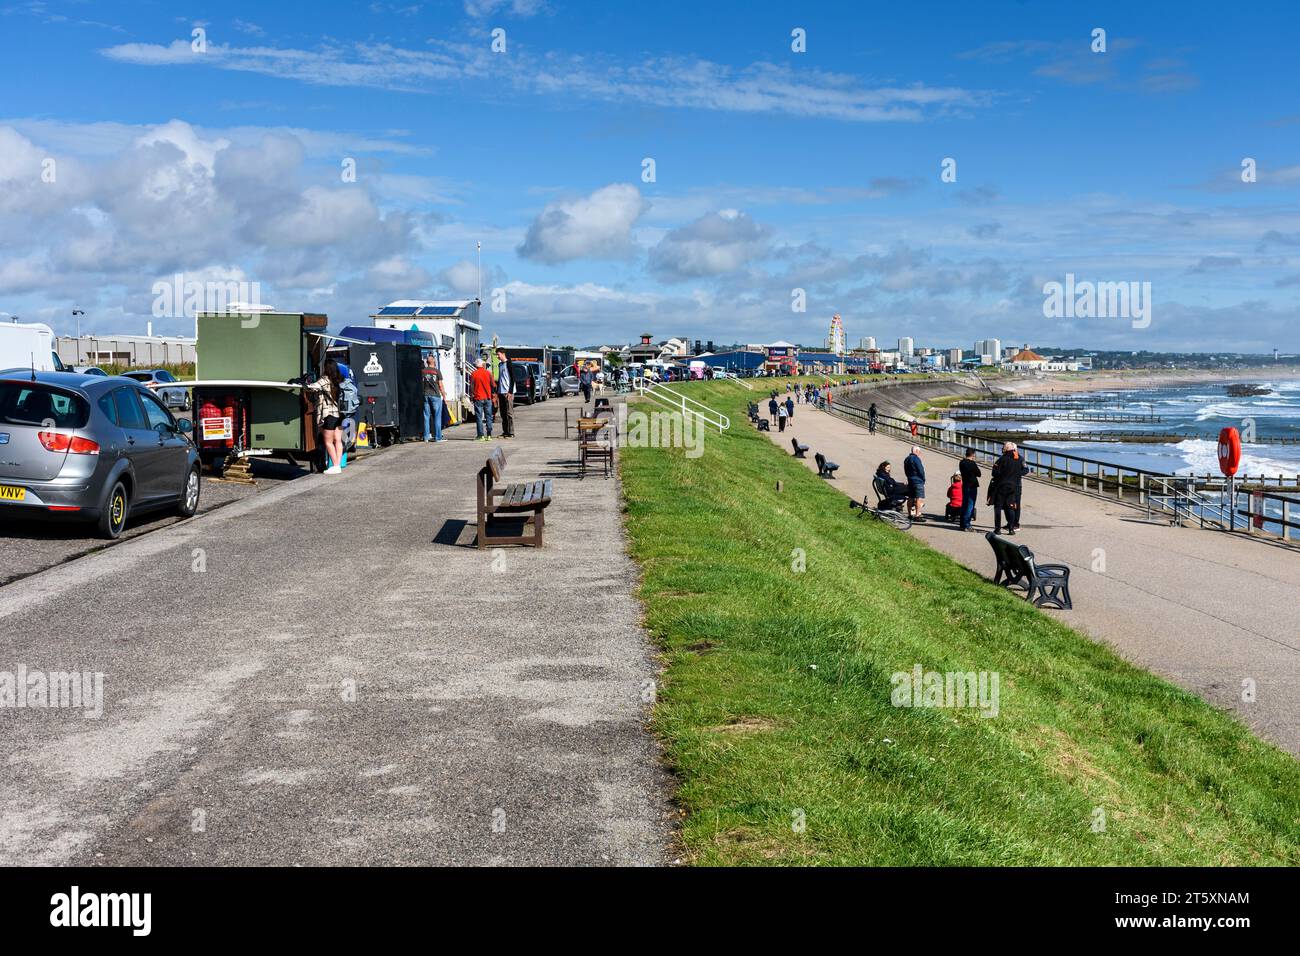 The esplanade promenade, Aberdeen beach, Scotland, UK Stock Photo